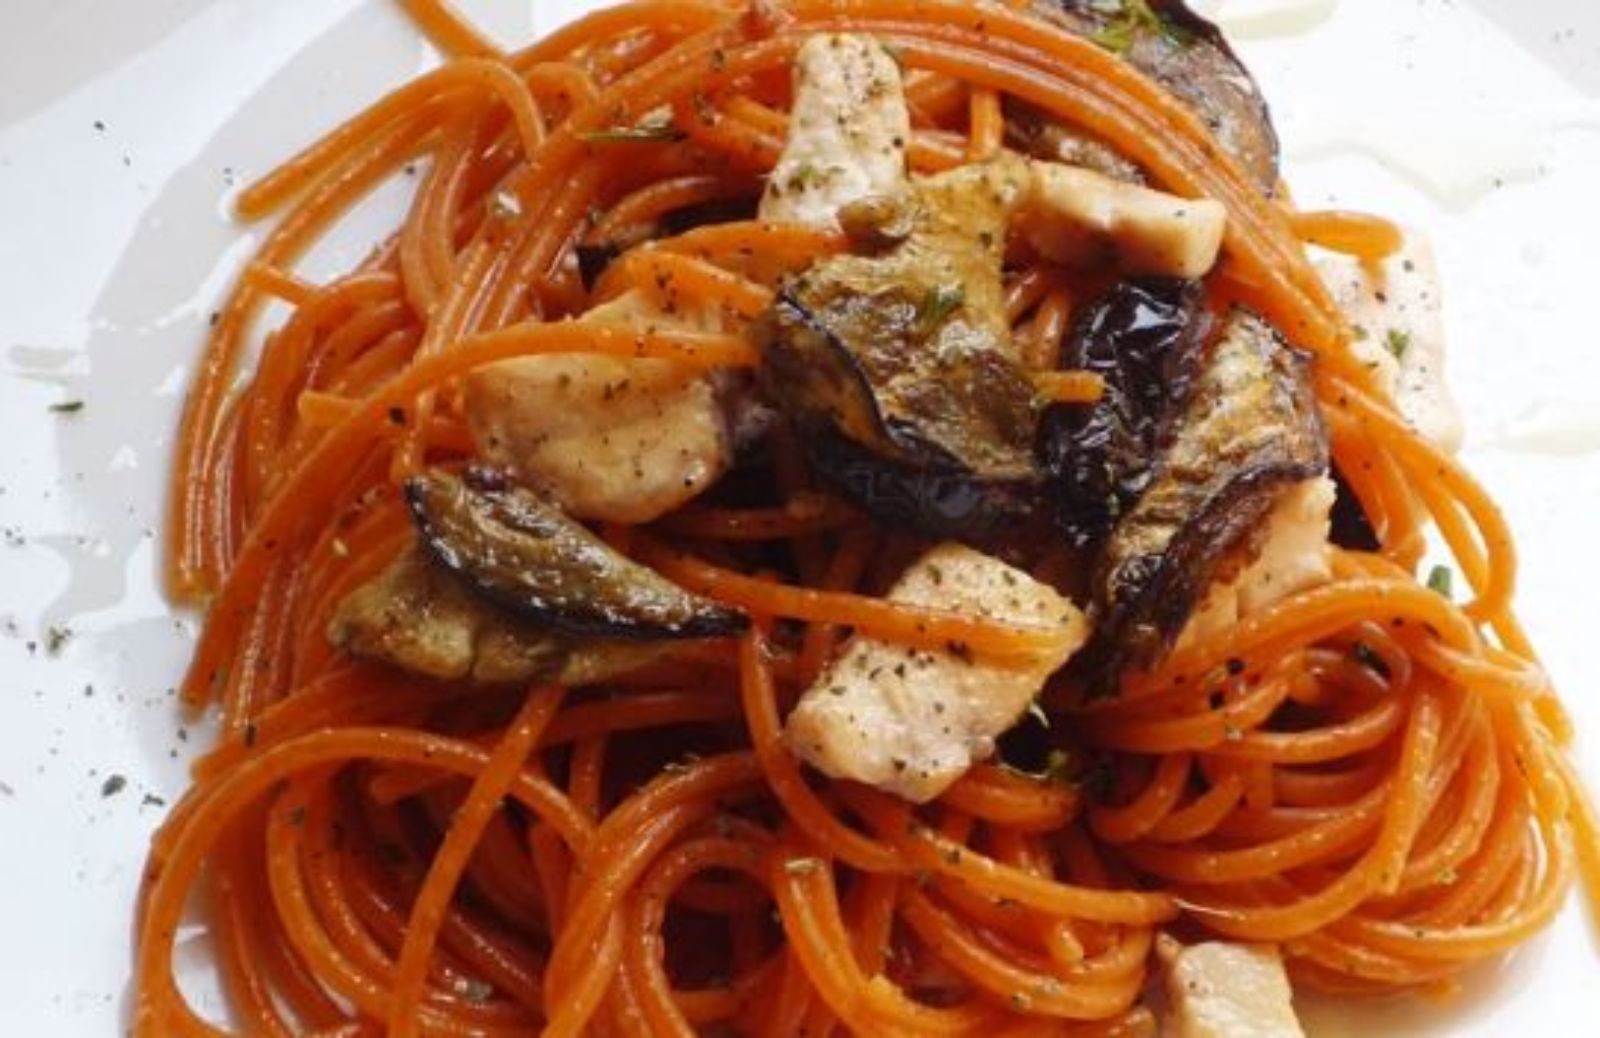 Primi piatti nichel free: spaghetti al pesce spada e melanzane